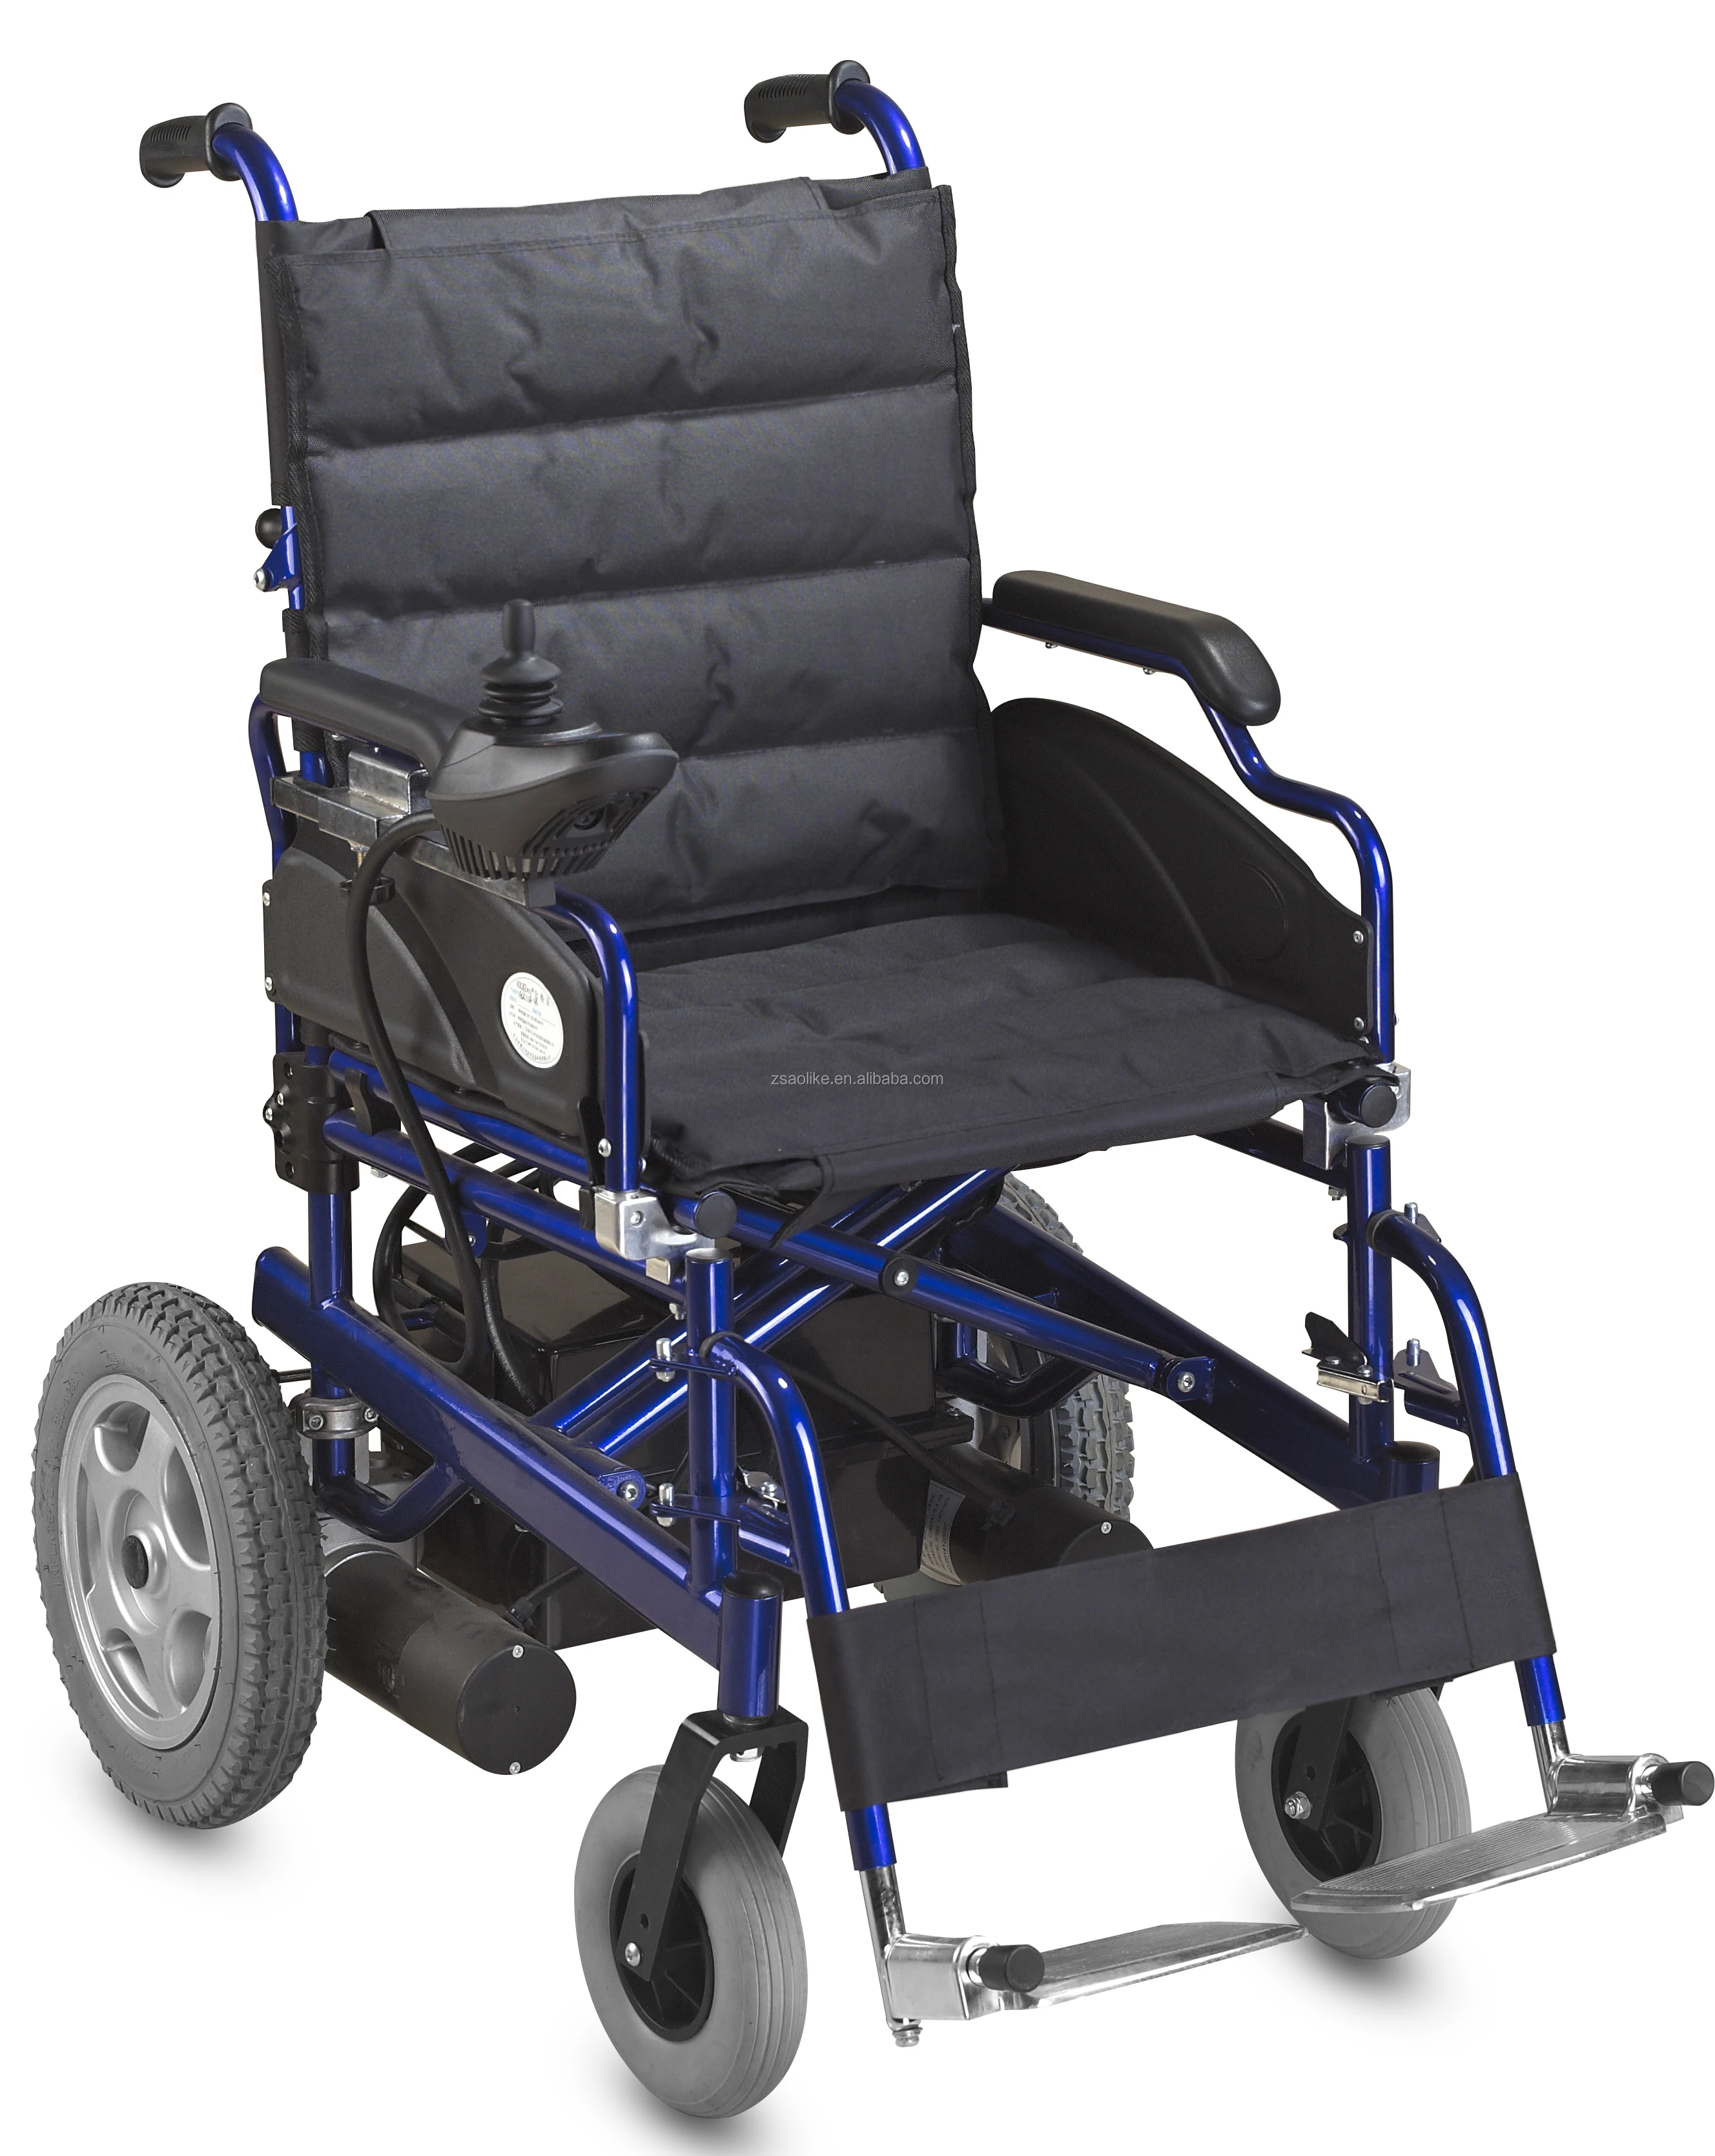 кресло коляска с жестким сидением и спинкой